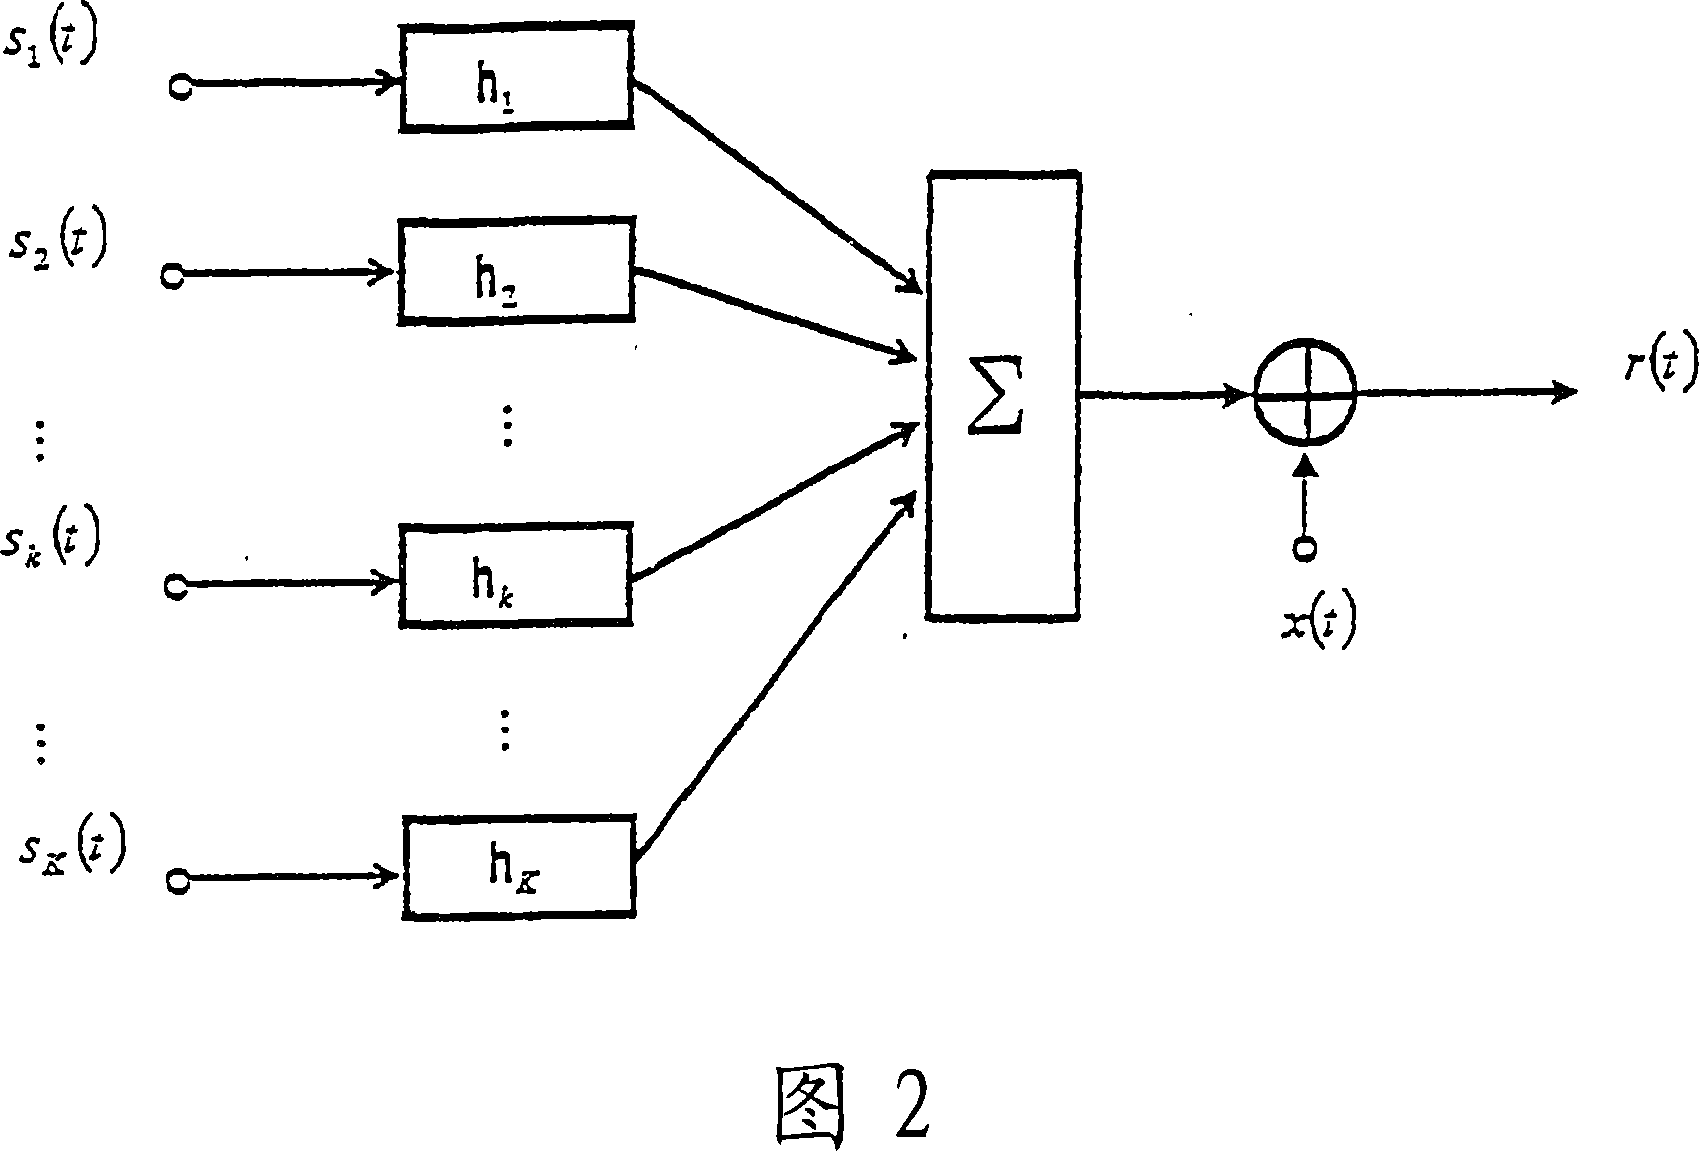 Code-division multiplex signal decorrelation/identification method